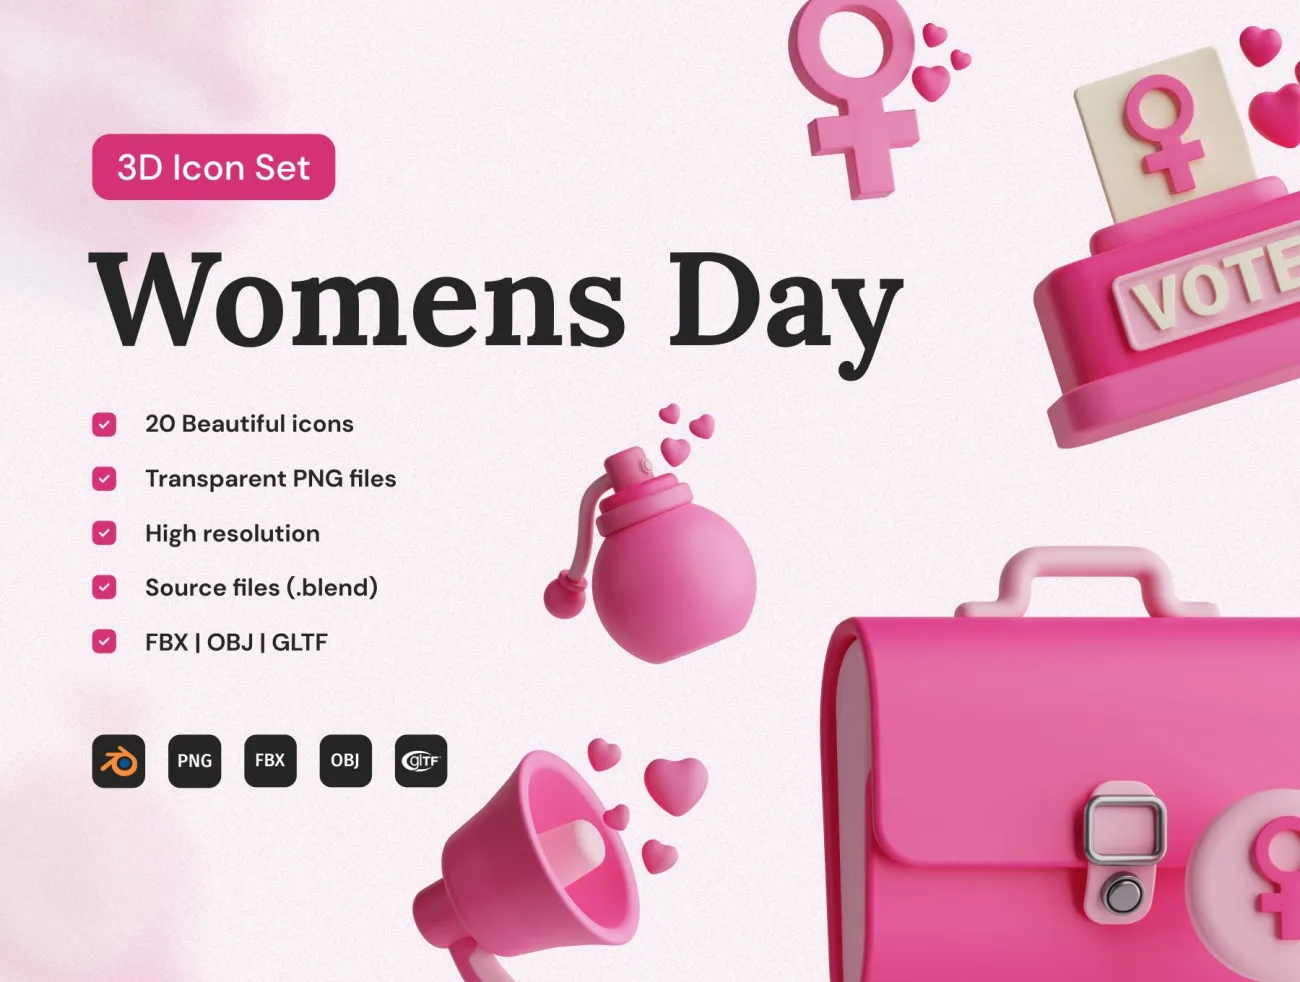 38女人节3D图标集 Women's Day 3D Icon Set缩略图到位啦UI